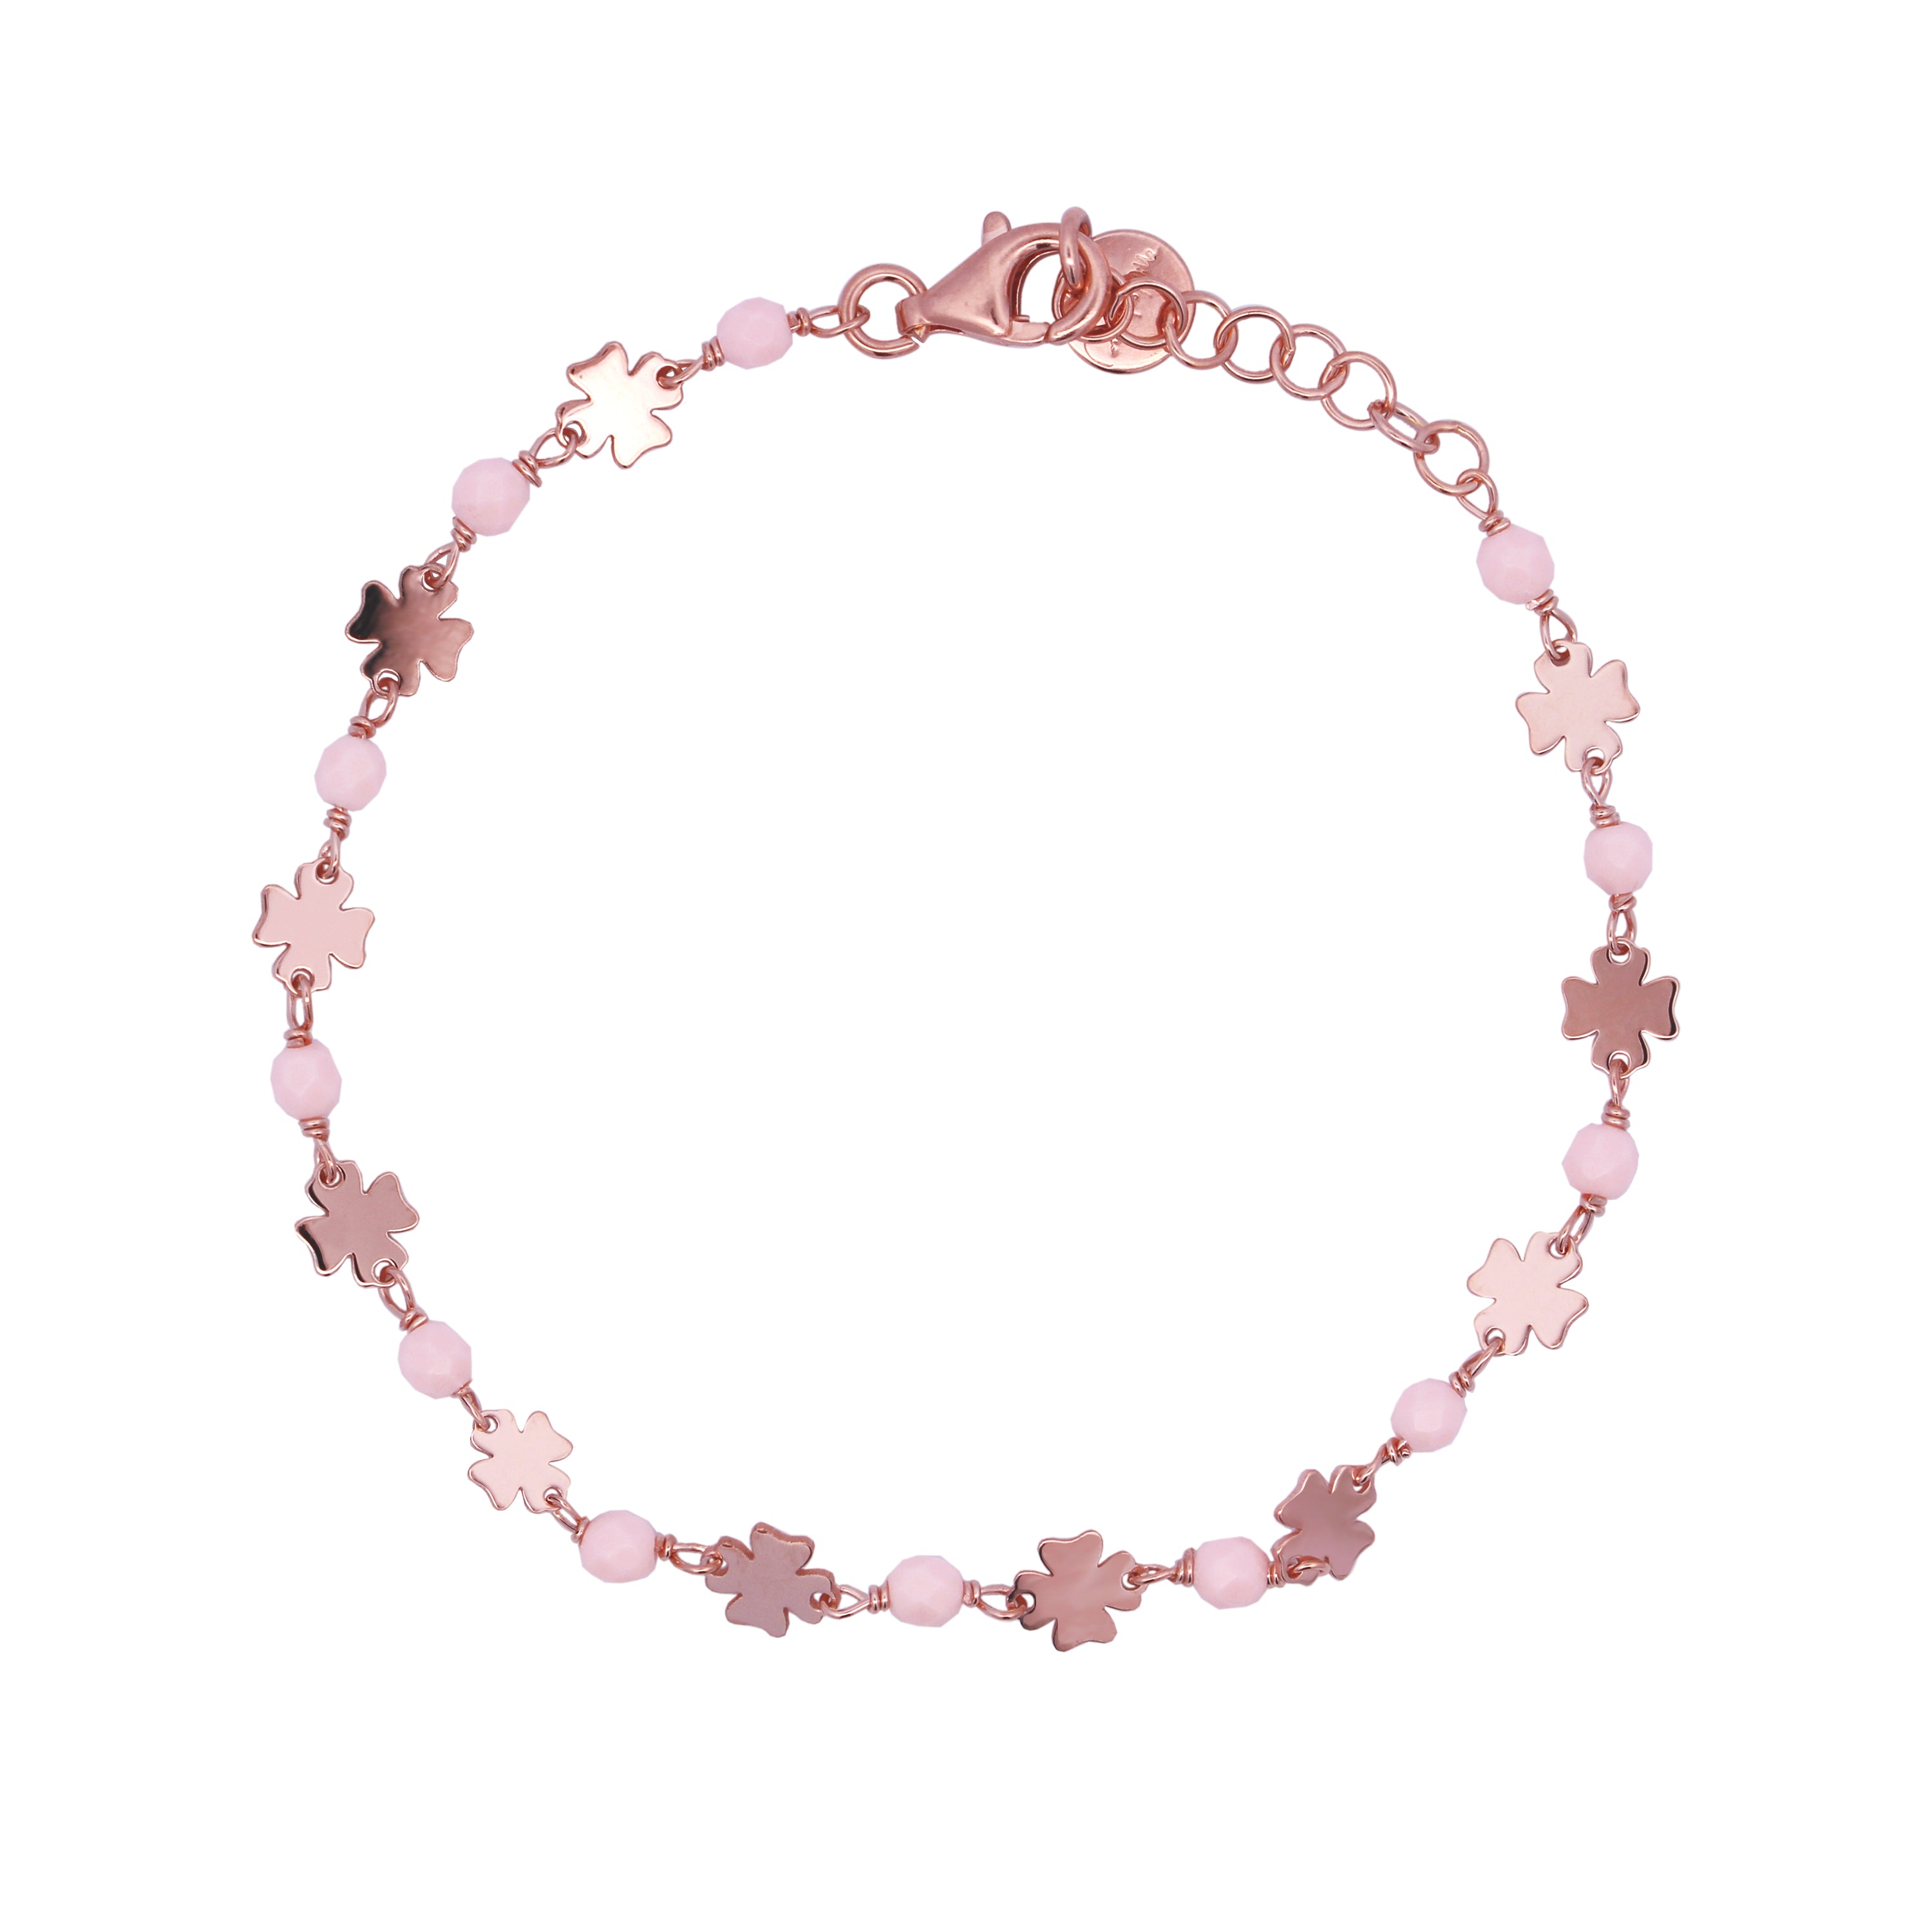 Bracelets - Chain bracelet Four-leaf clovers Pink stones Adult - Io&Ro - 1 | Rue des Mille